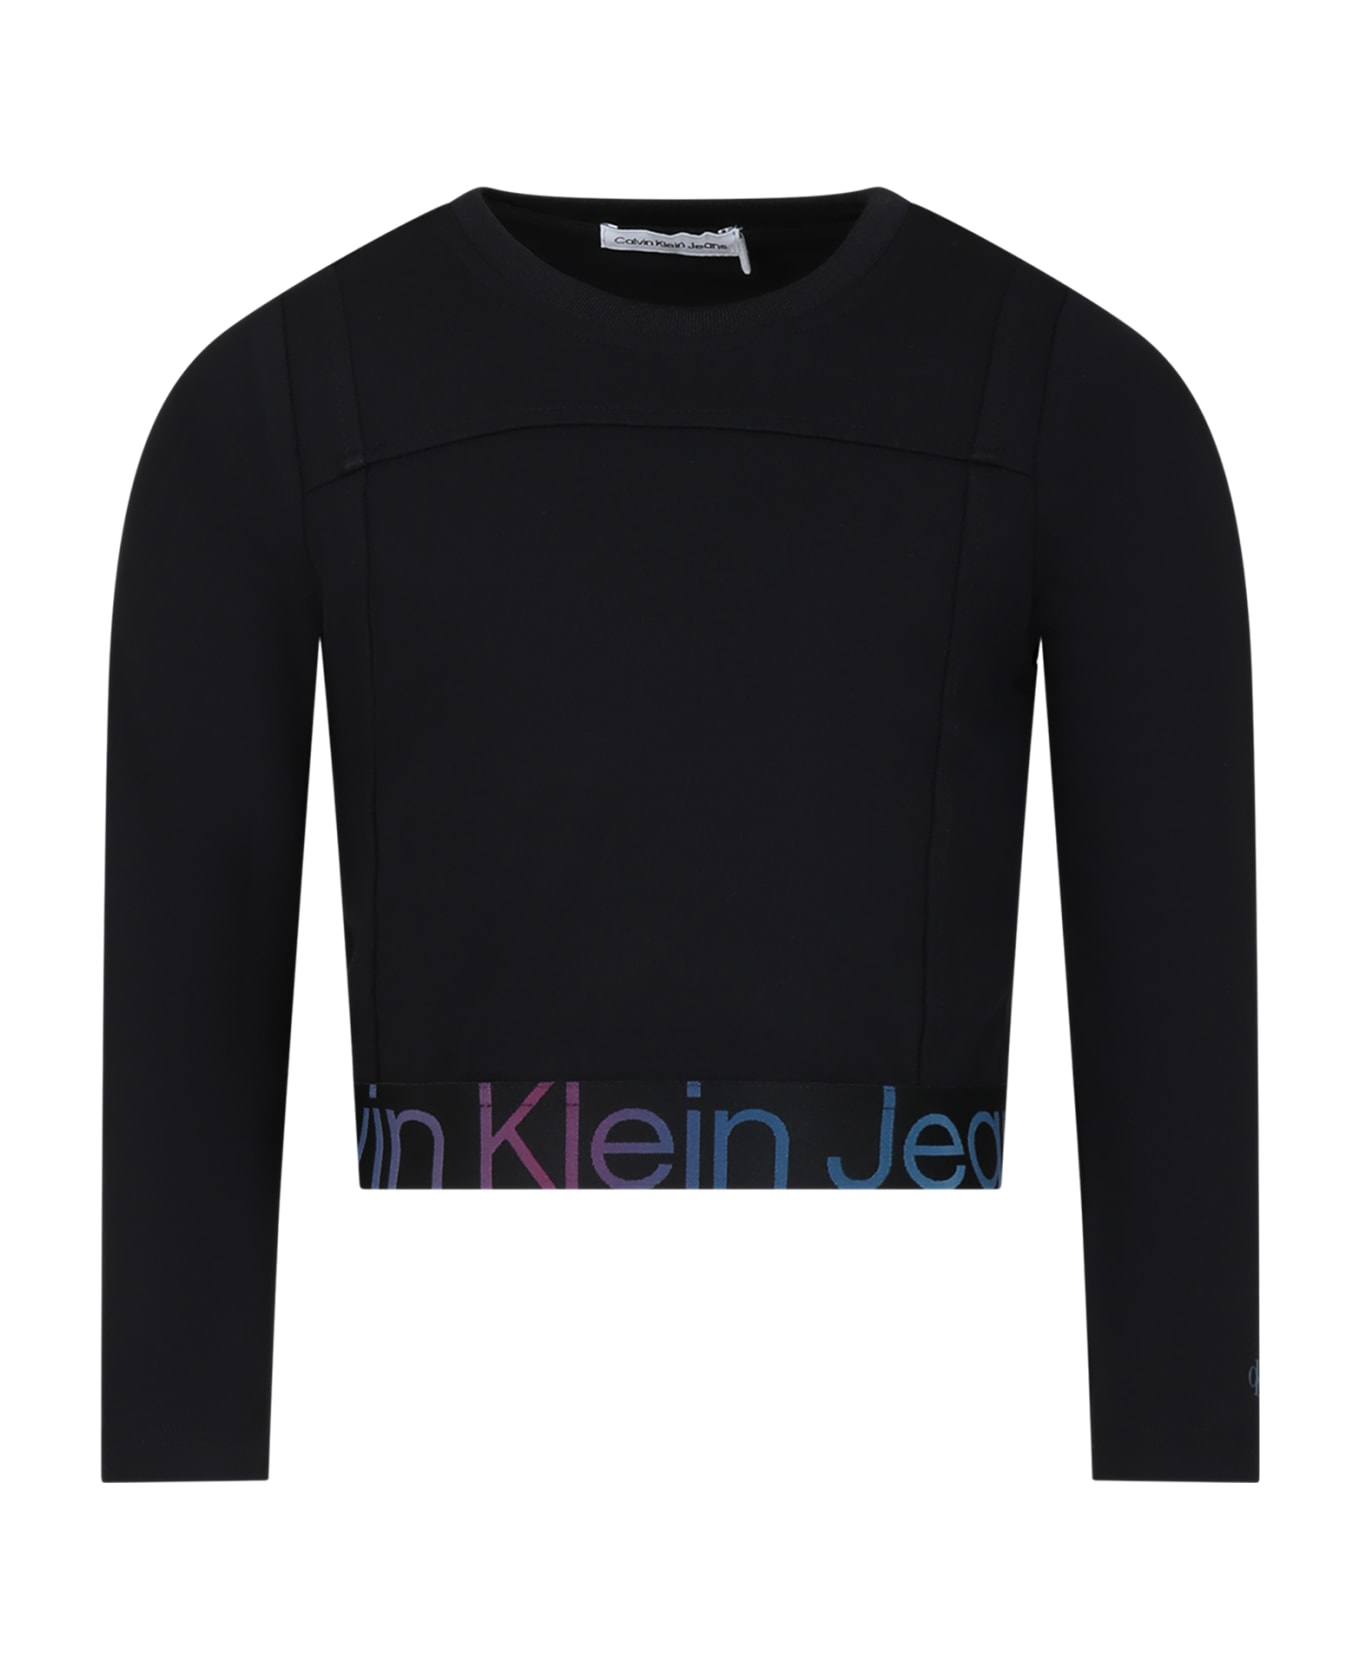 Calvin Klein Black T-shirt For Girl With Logo - Black